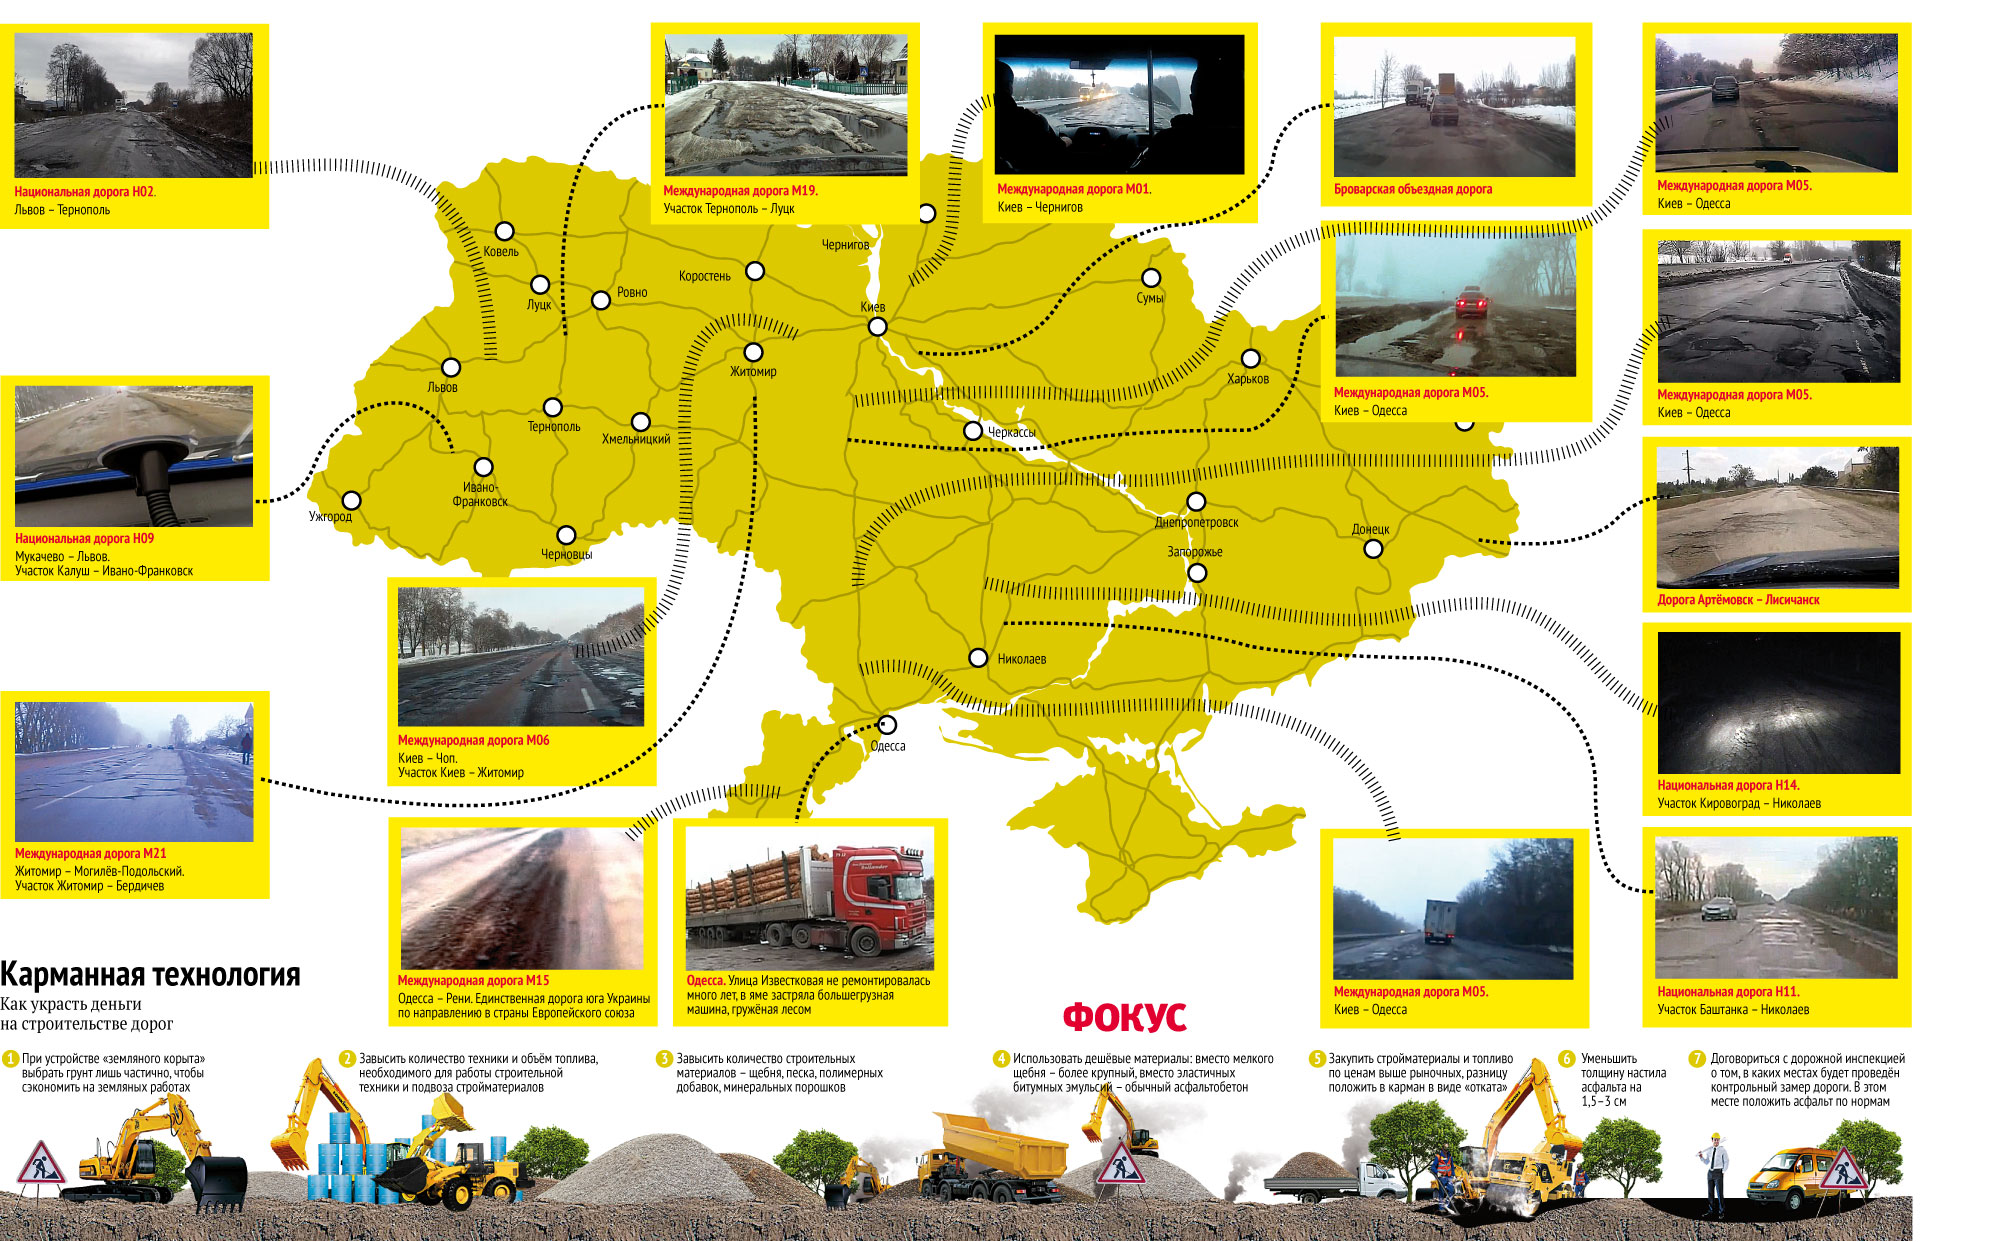 Straßenzustandskarte des Wochenjournals Focus: http://focus.ua/society/261819/